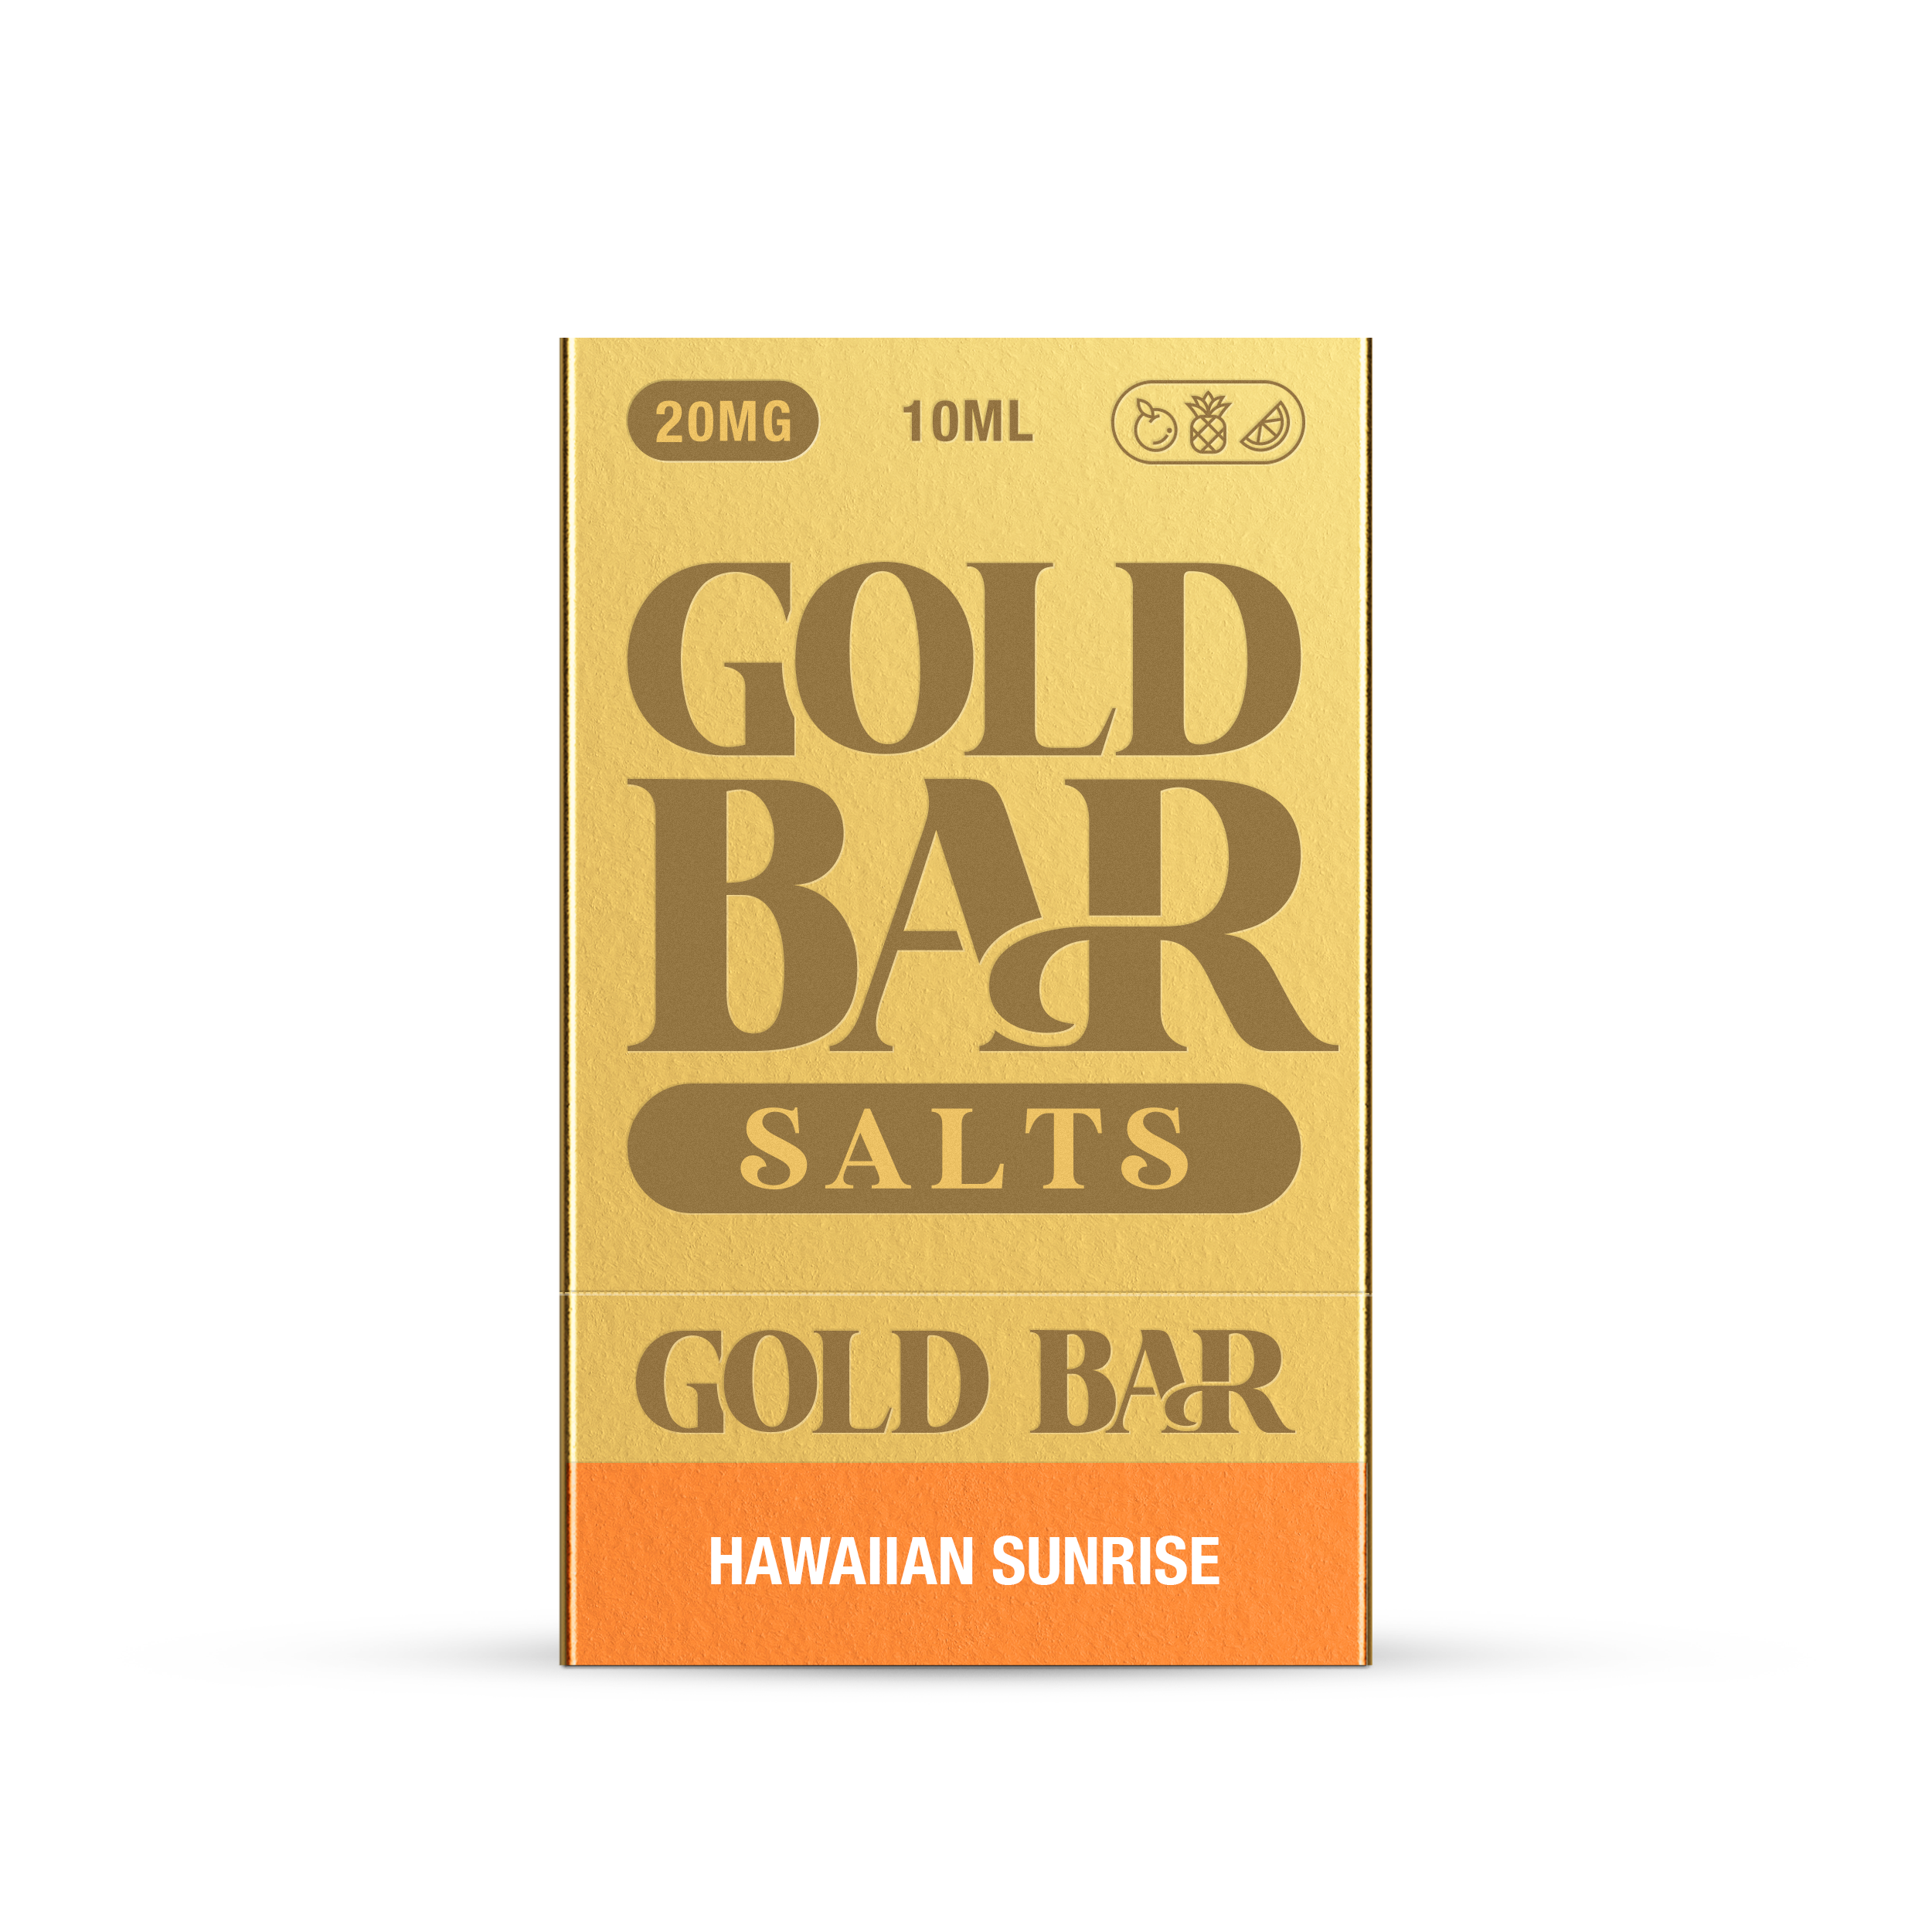 GOLD BAR SALTS 10ML HAWAIIAN SUNRISE (10)